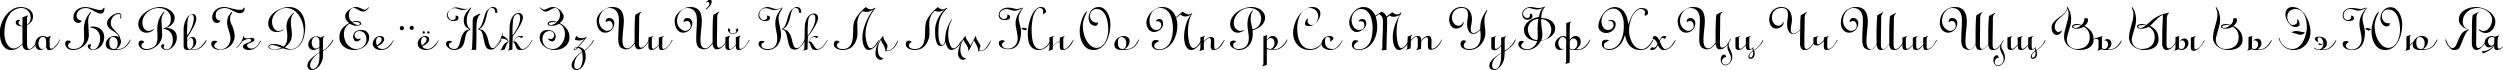 Пример написания русского алфавита шрифтом LinoScript